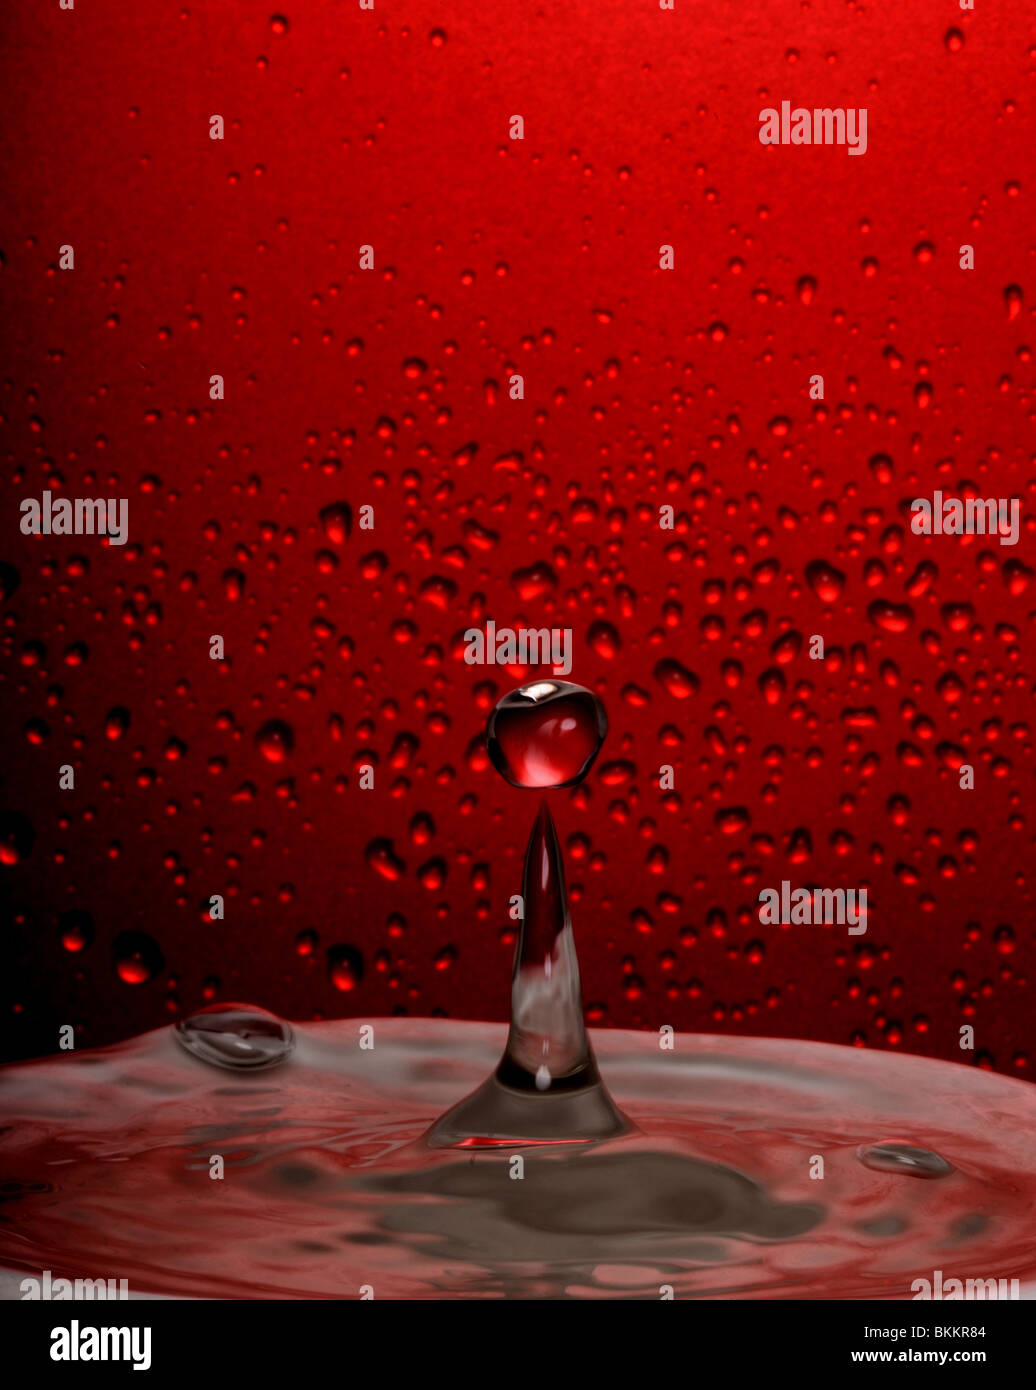 Rot, Tropfen Wasser, Wasser, High-Speed-Fotografie, Höhepunkt des Erfolgs Stockfoto